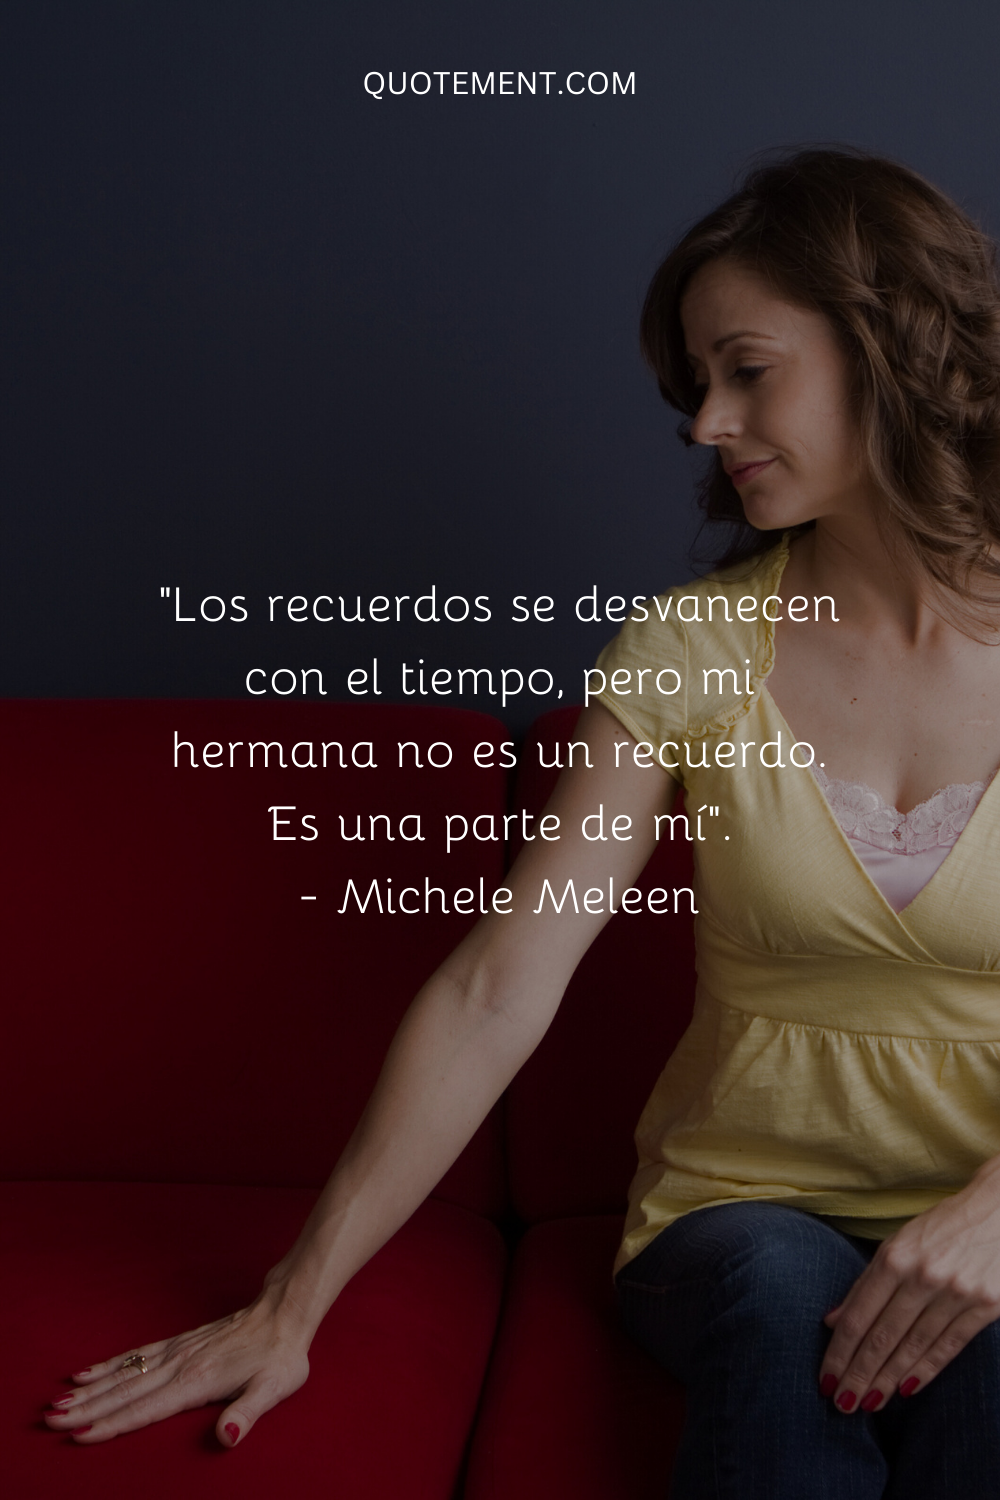 "Los recuerdos se desvanecen con el tiempo, pero mi hermana no es un recuerdo. Es parte de mí". - Michele Meleen